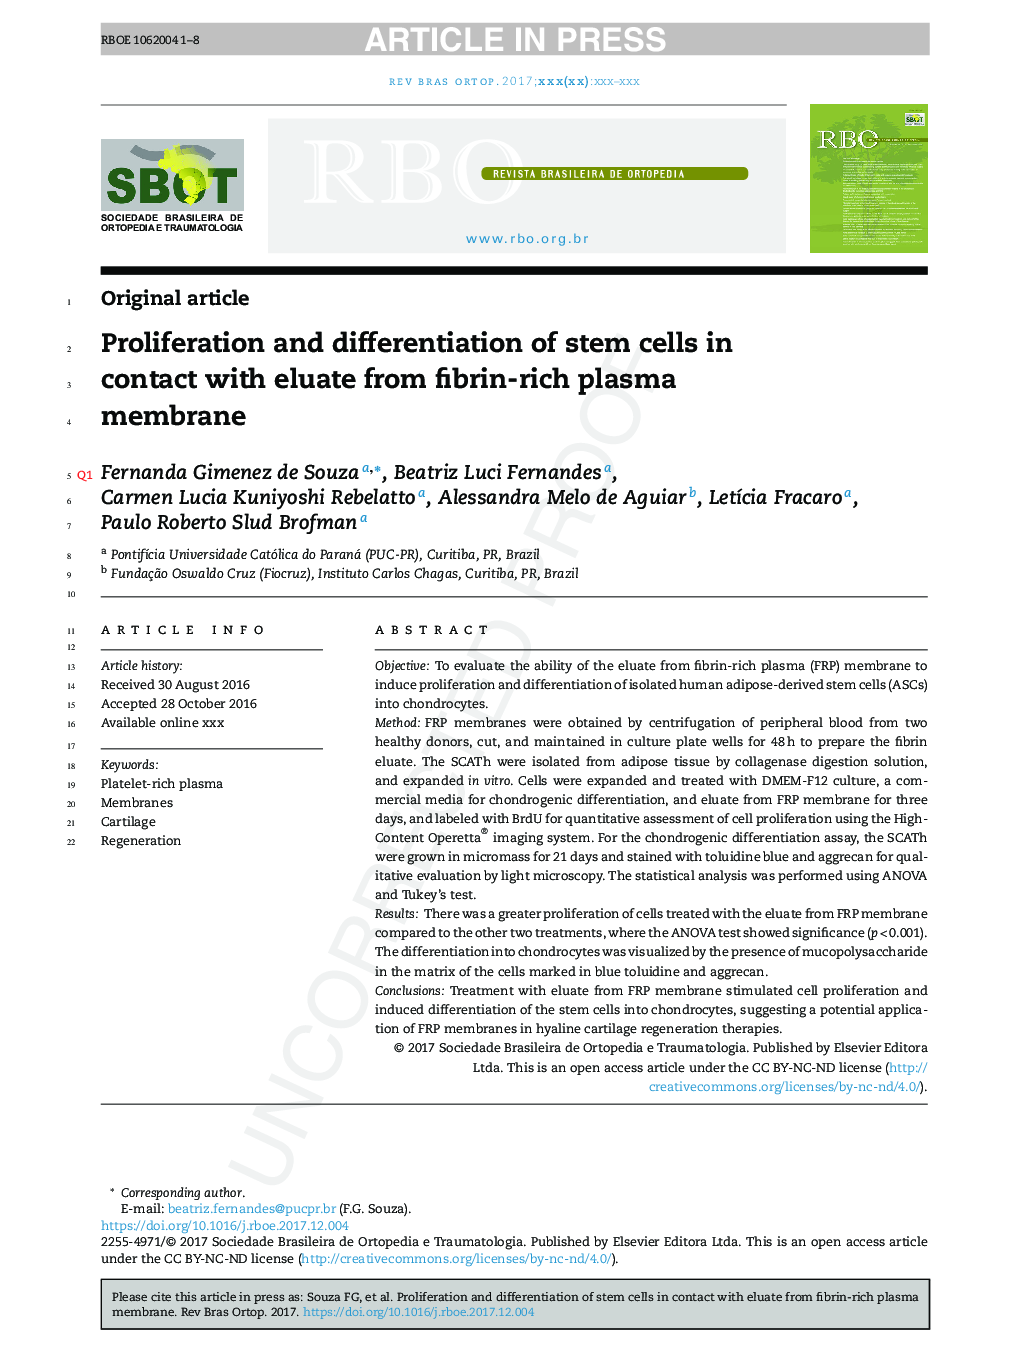 تکثیر و تمایز سلول های بنیادی در تماس با ایلات از غشای پلاسمای غنی از فیبرین 